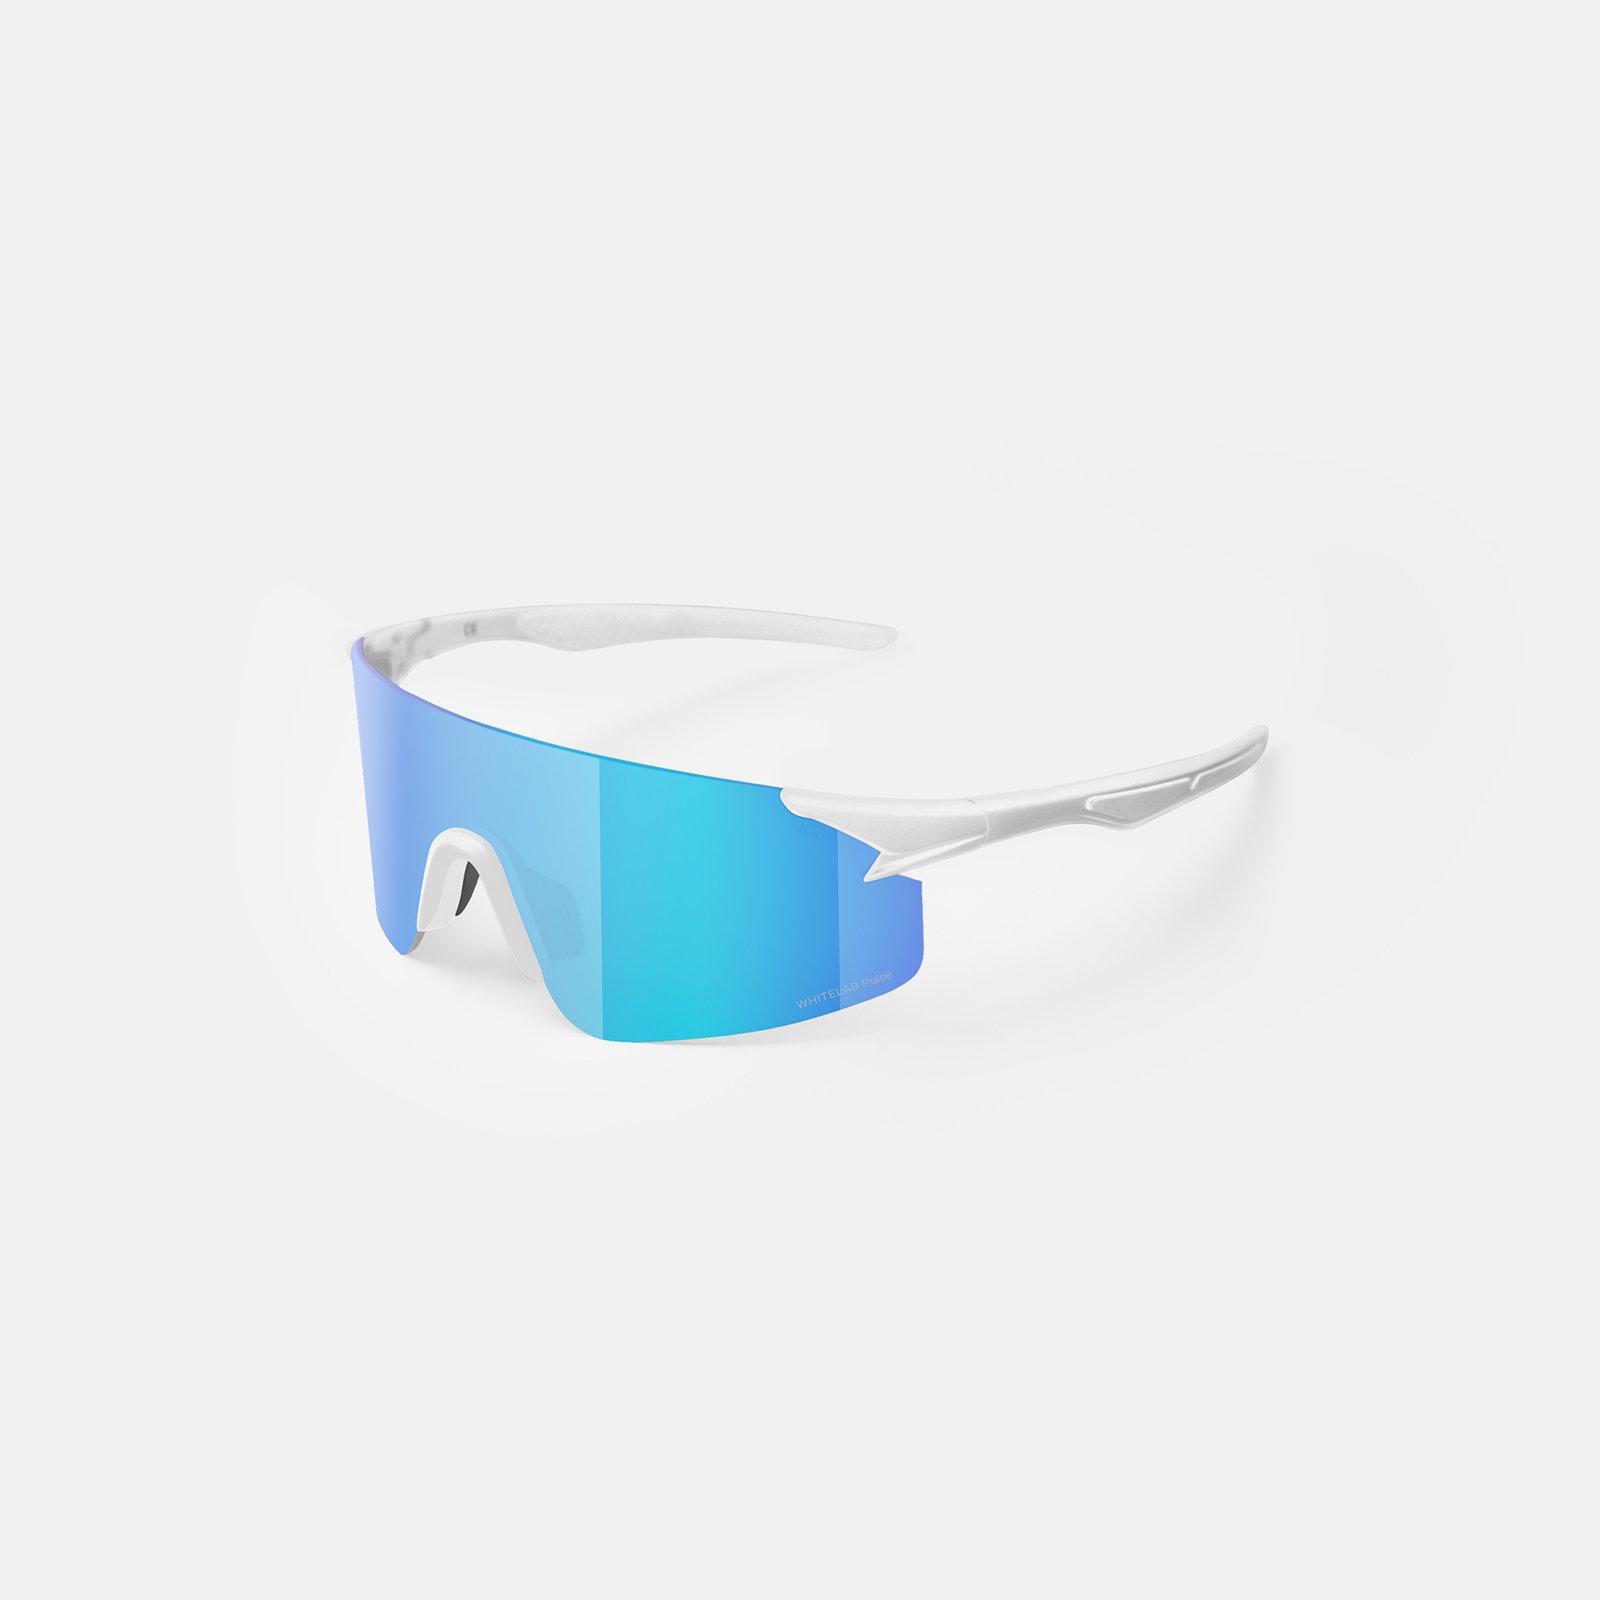  синие солнцезащитные очки White Lab Visor Visor white/ultramarin - цена, описание, фото 2